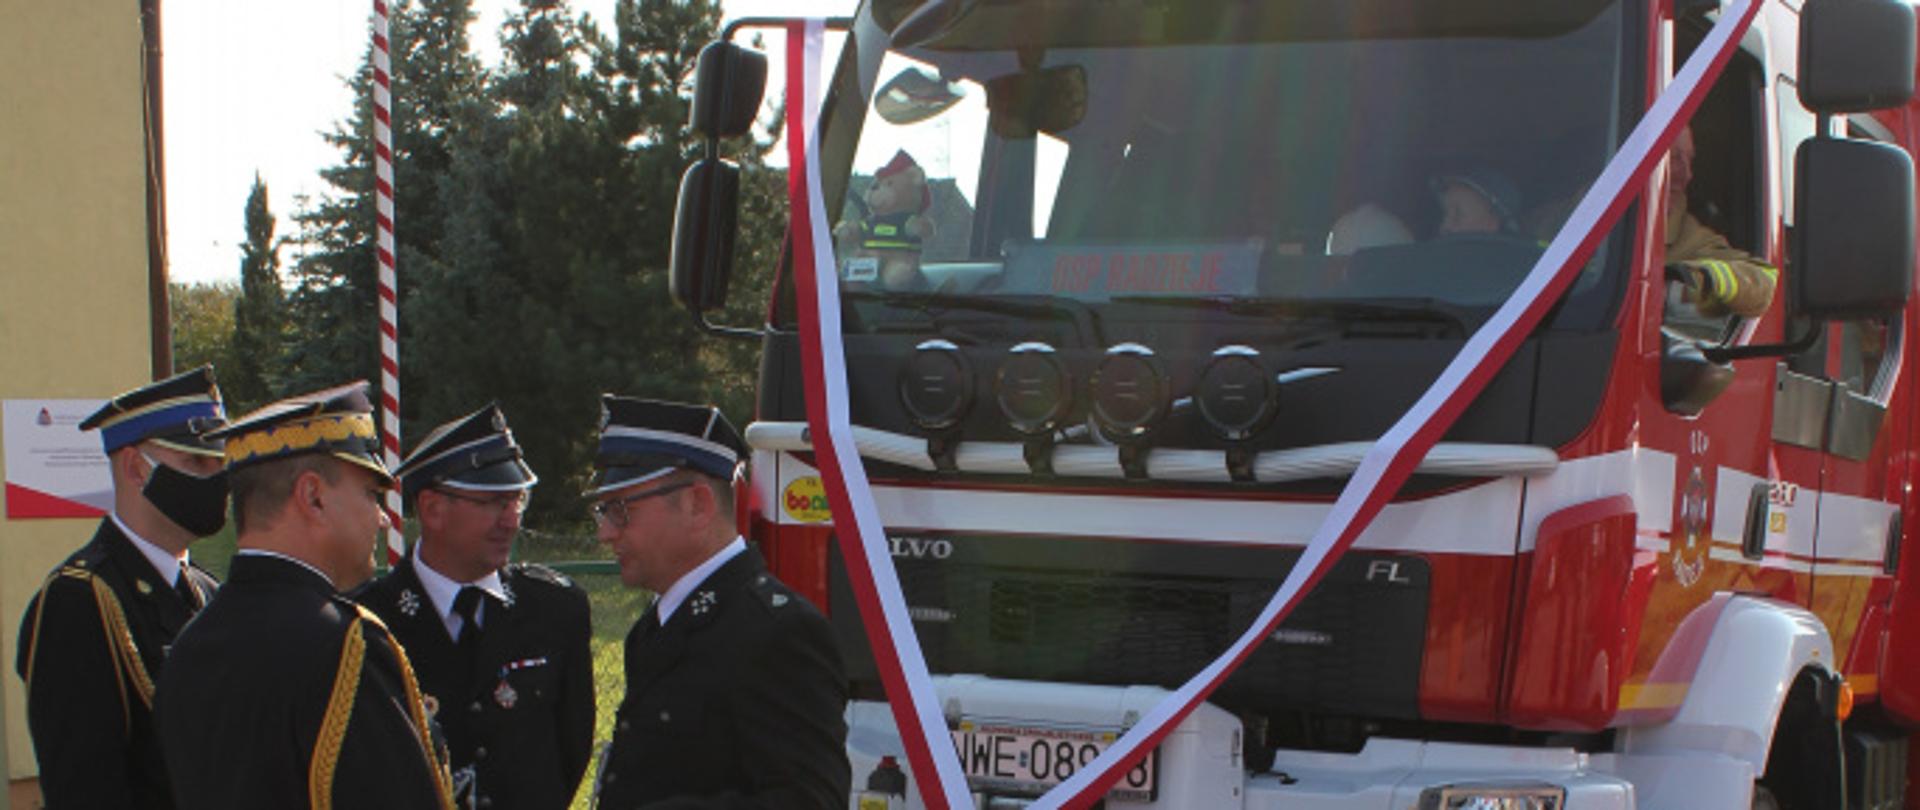 W-M Komendant Wojewódzki oraz przedstawiciele OSP na tle pojazdu ratowniczo-gaśniczego